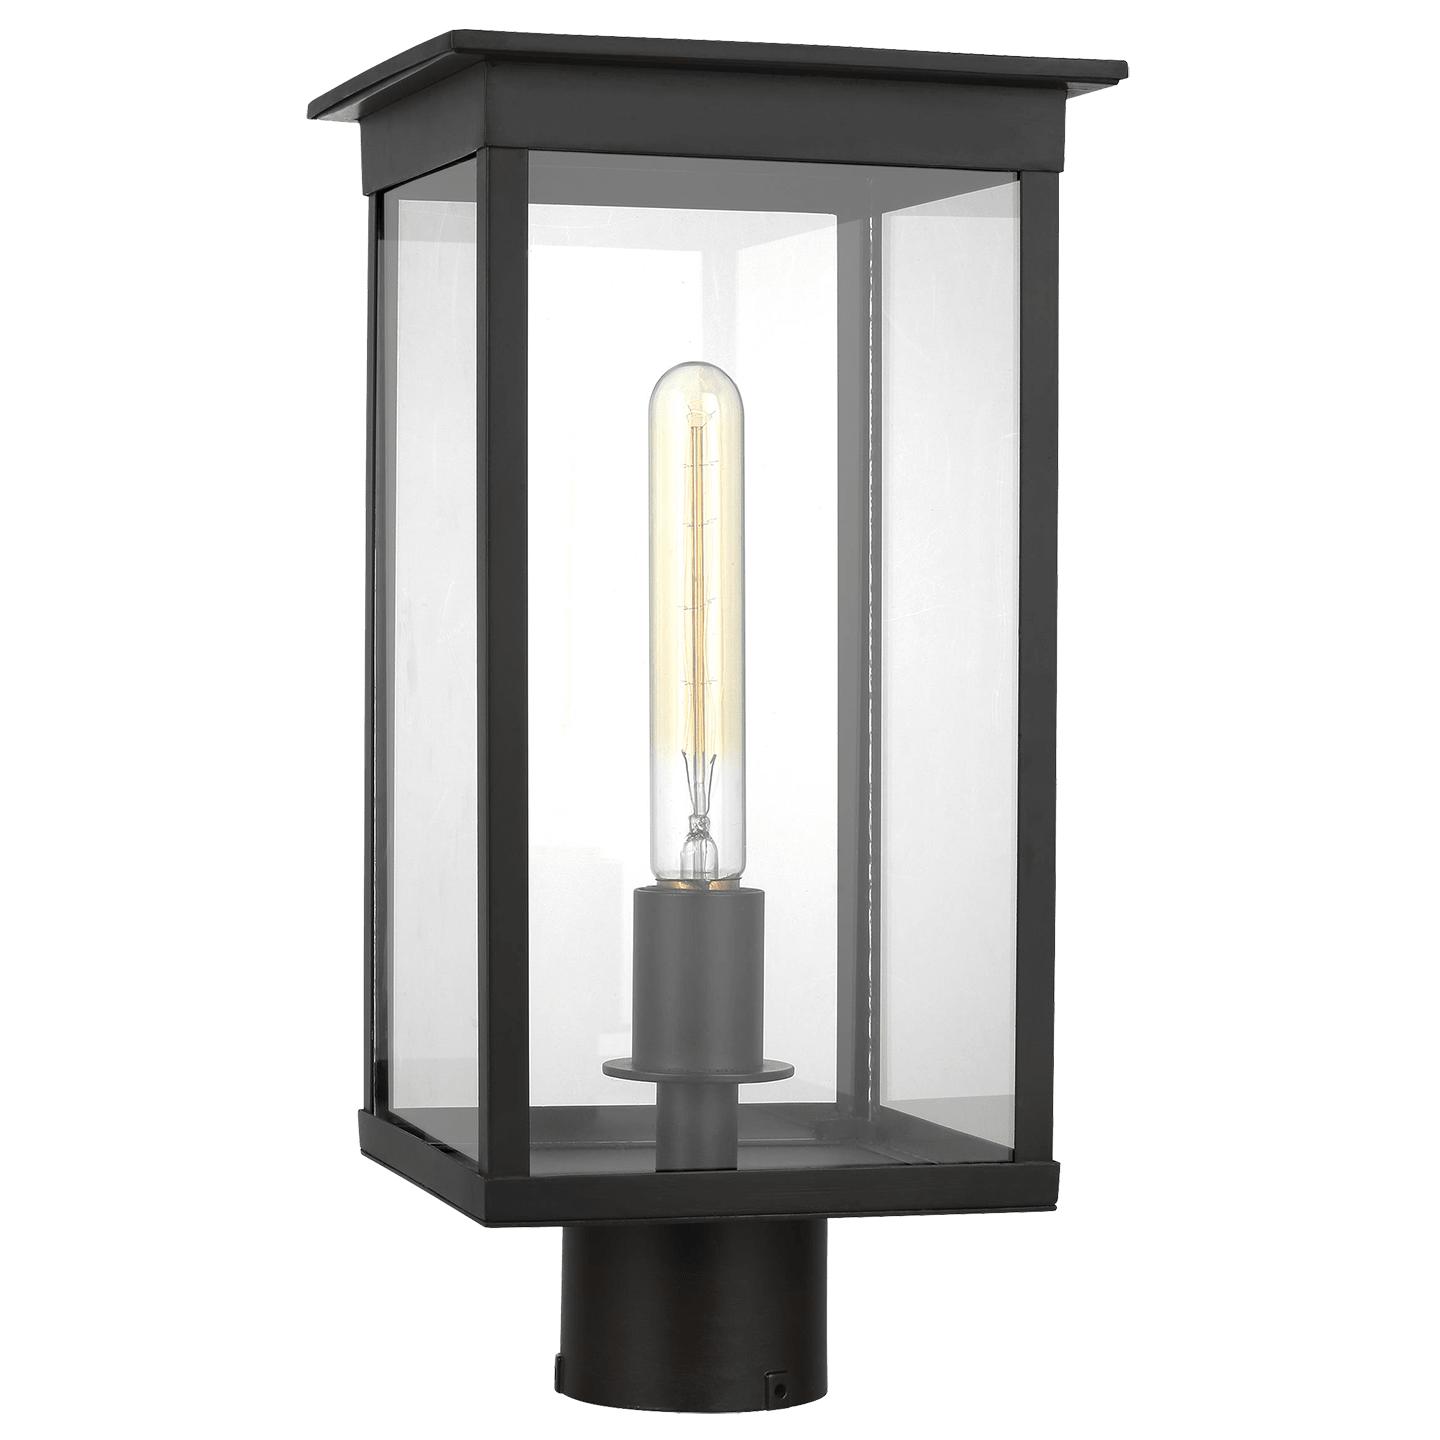 Купить Уличный фонарь Freeport Medium Outdoor Post Lantern в интернет-магазине roooms.ru